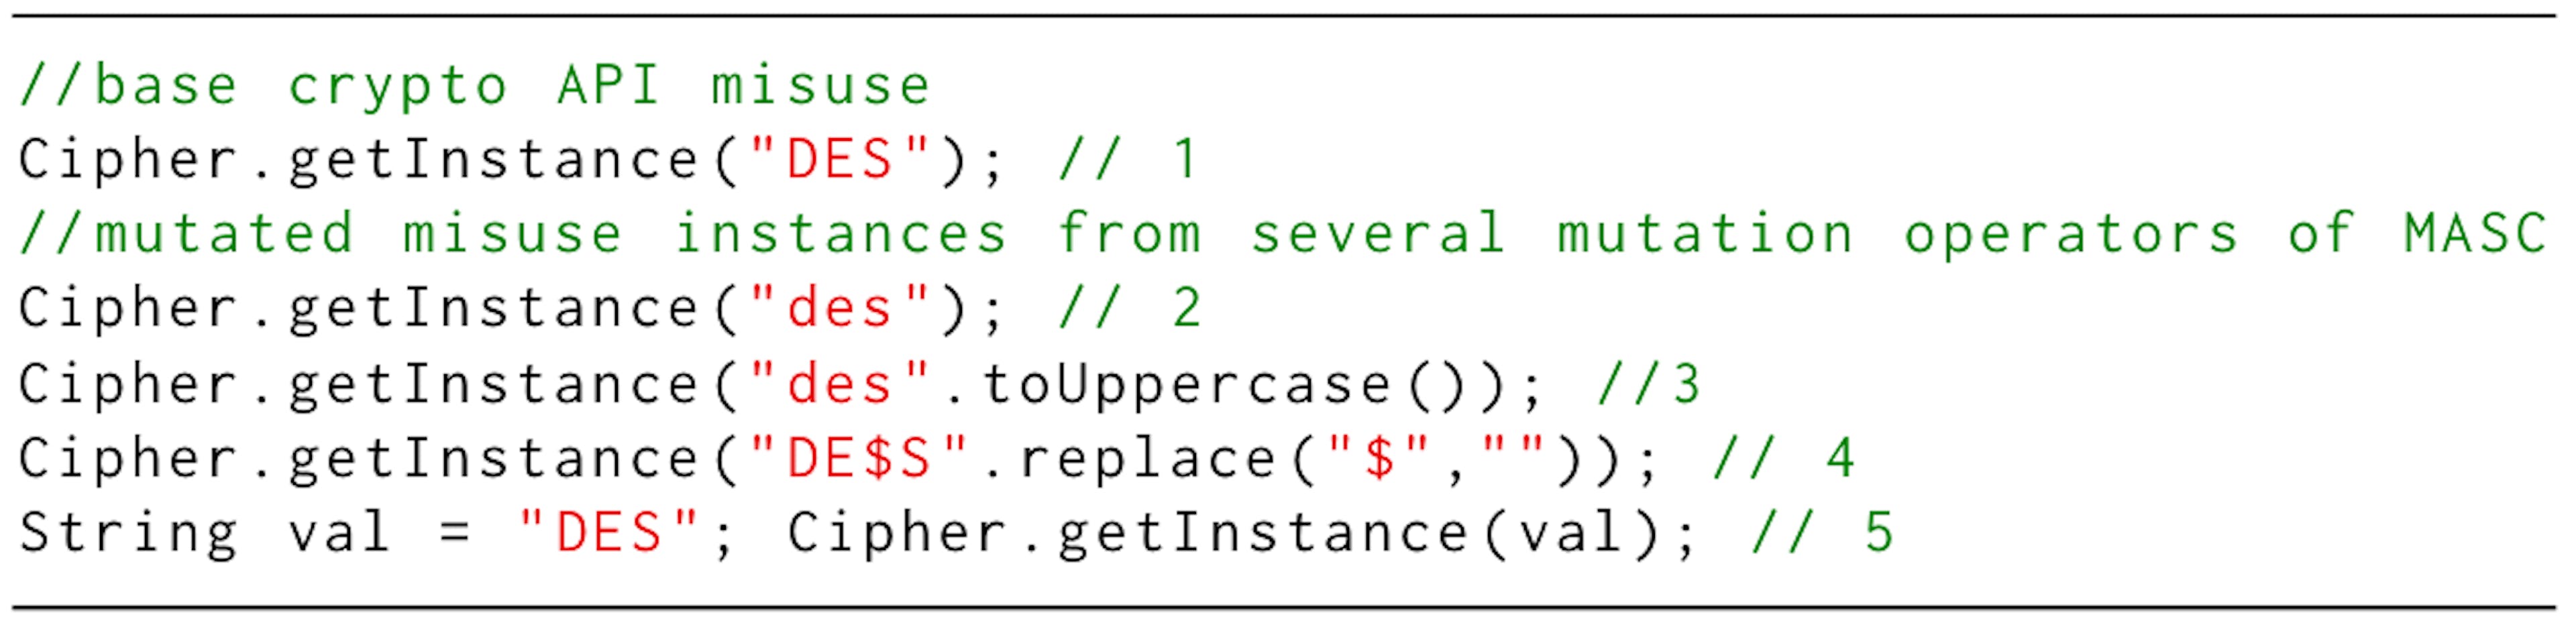 清单 1：MASC 创建的加密 API 滥用实例示例